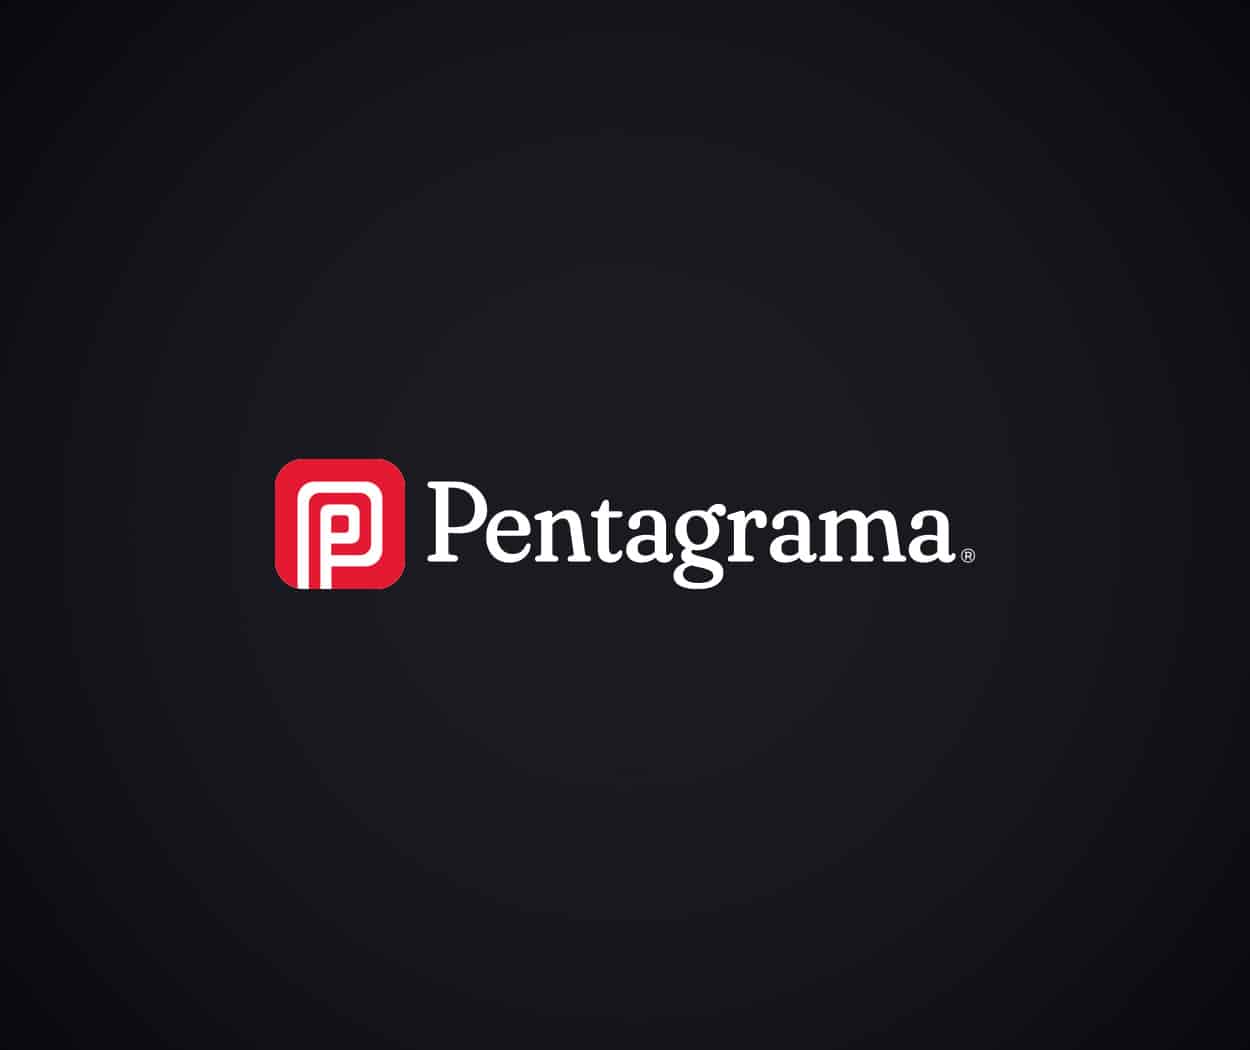 pentagrama-branding-001